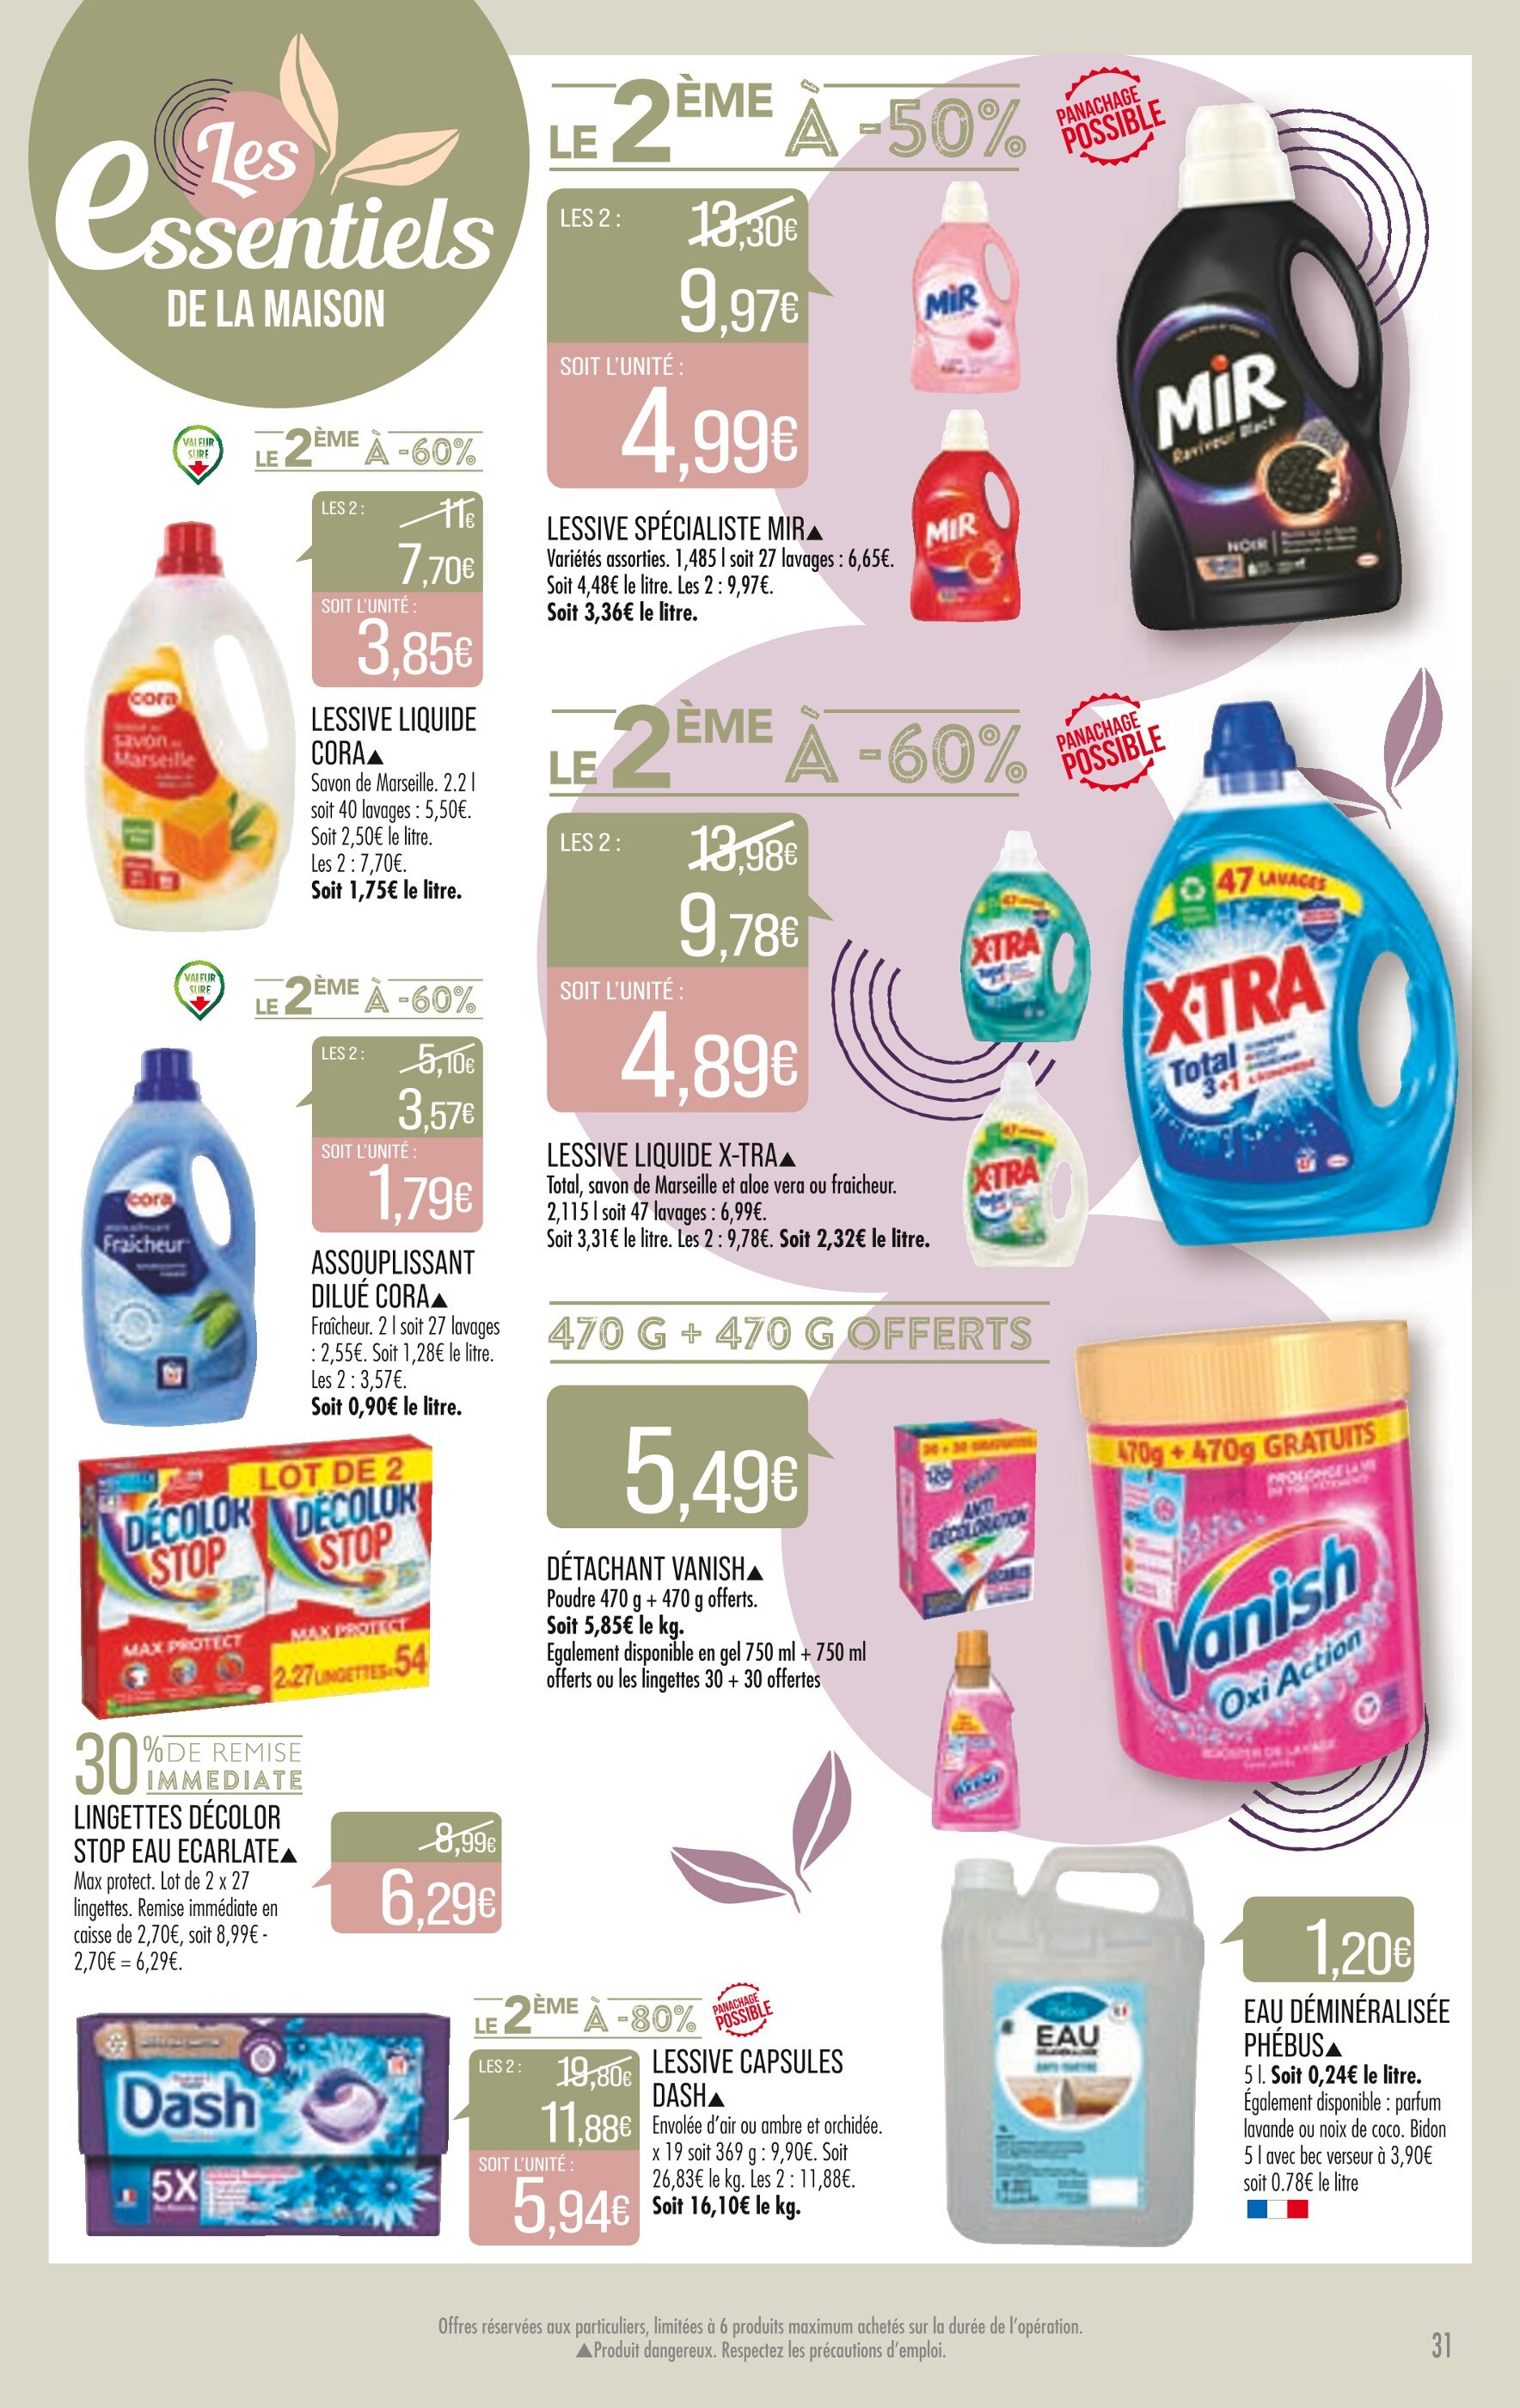 Omo - Lessive liquide rêve de coco 40 lavages - Supermarchés Match